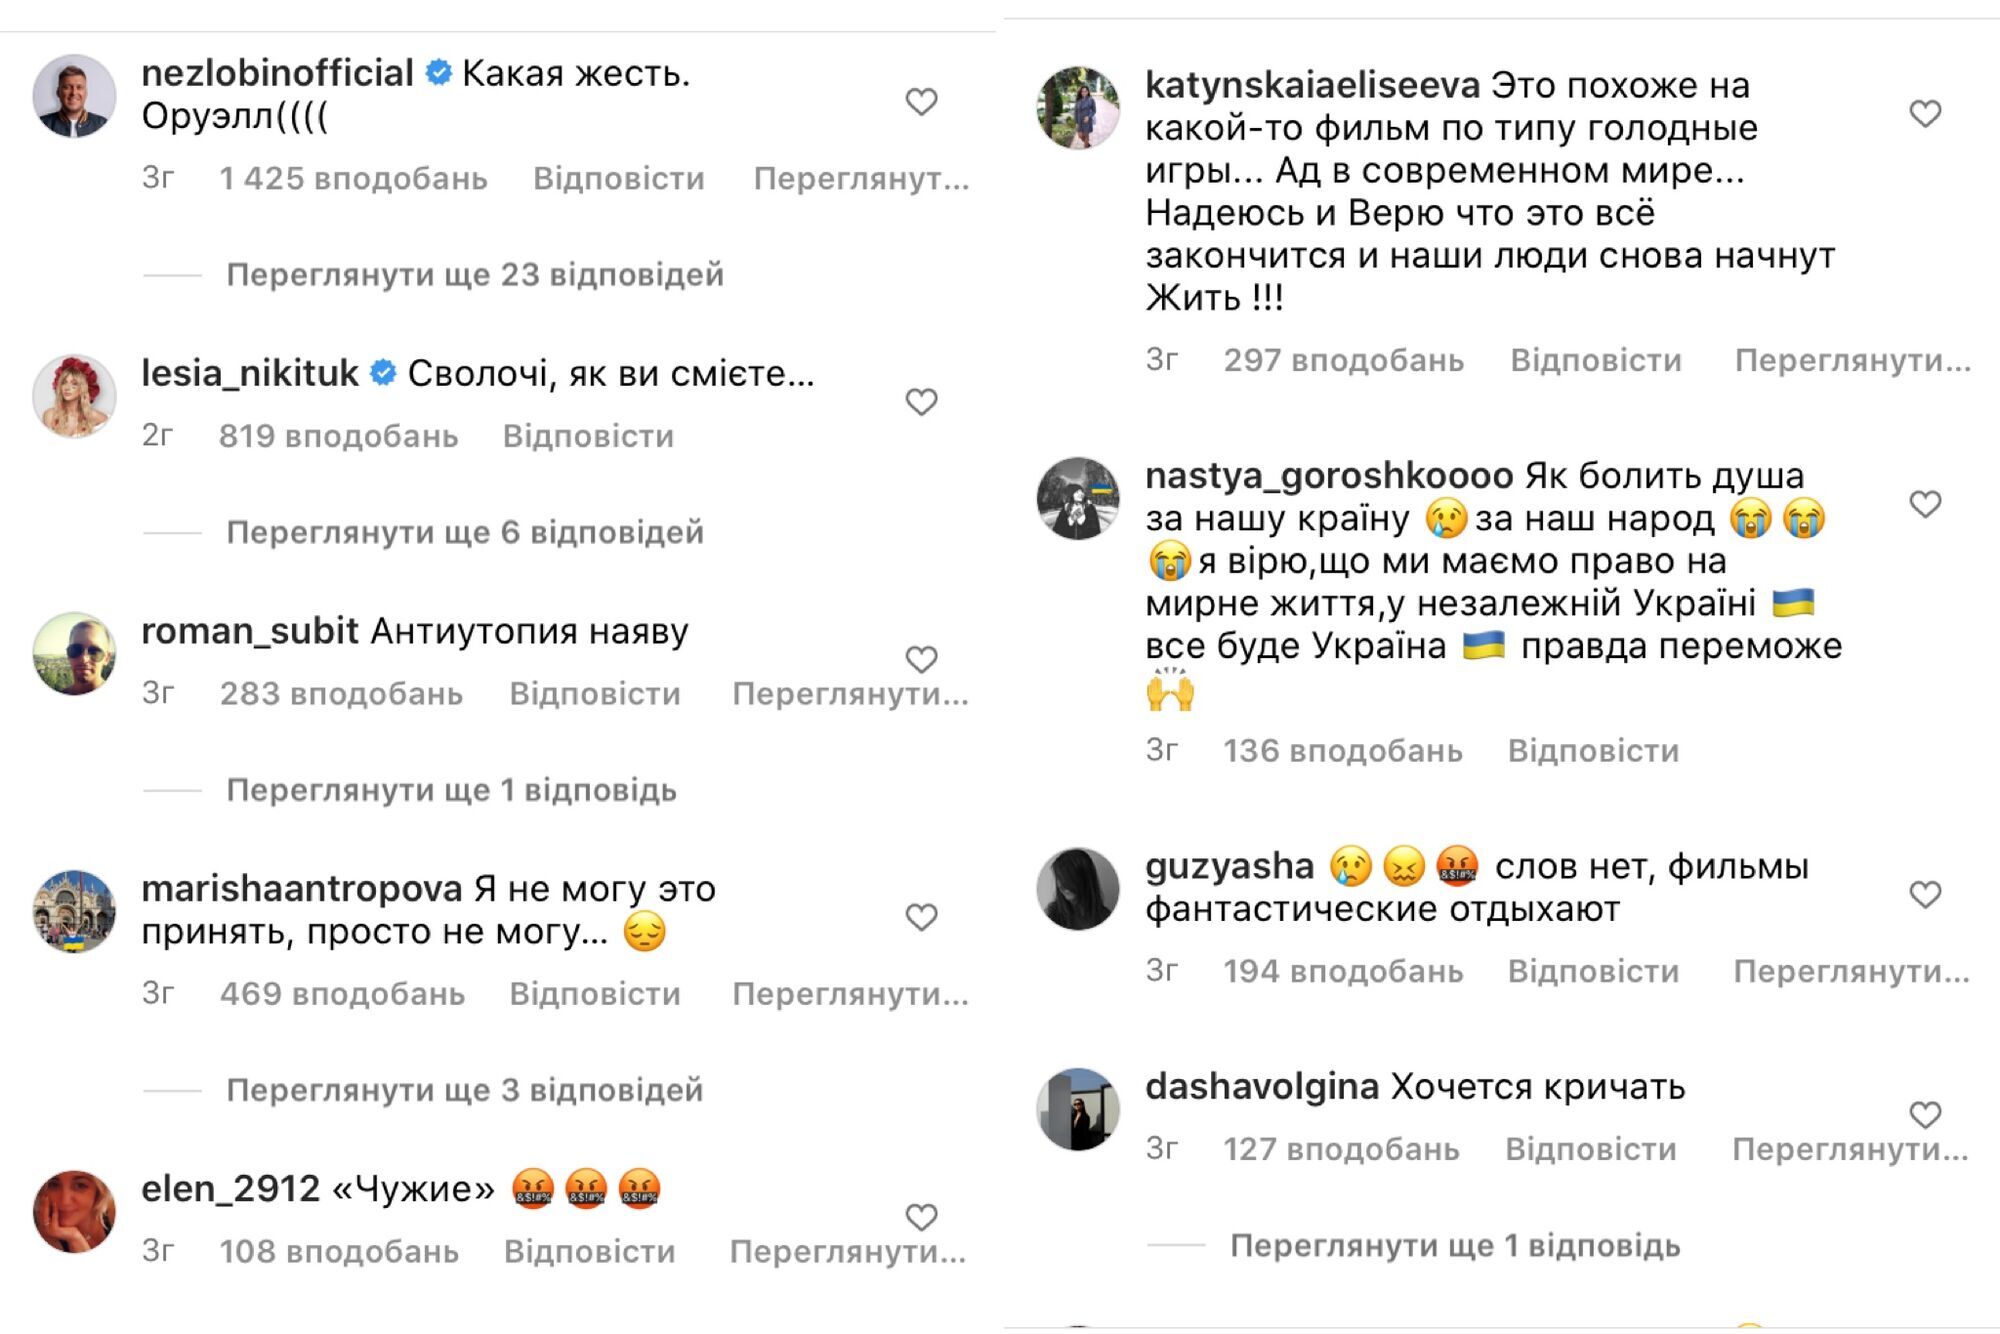 Коментарі під постом Бєднякова